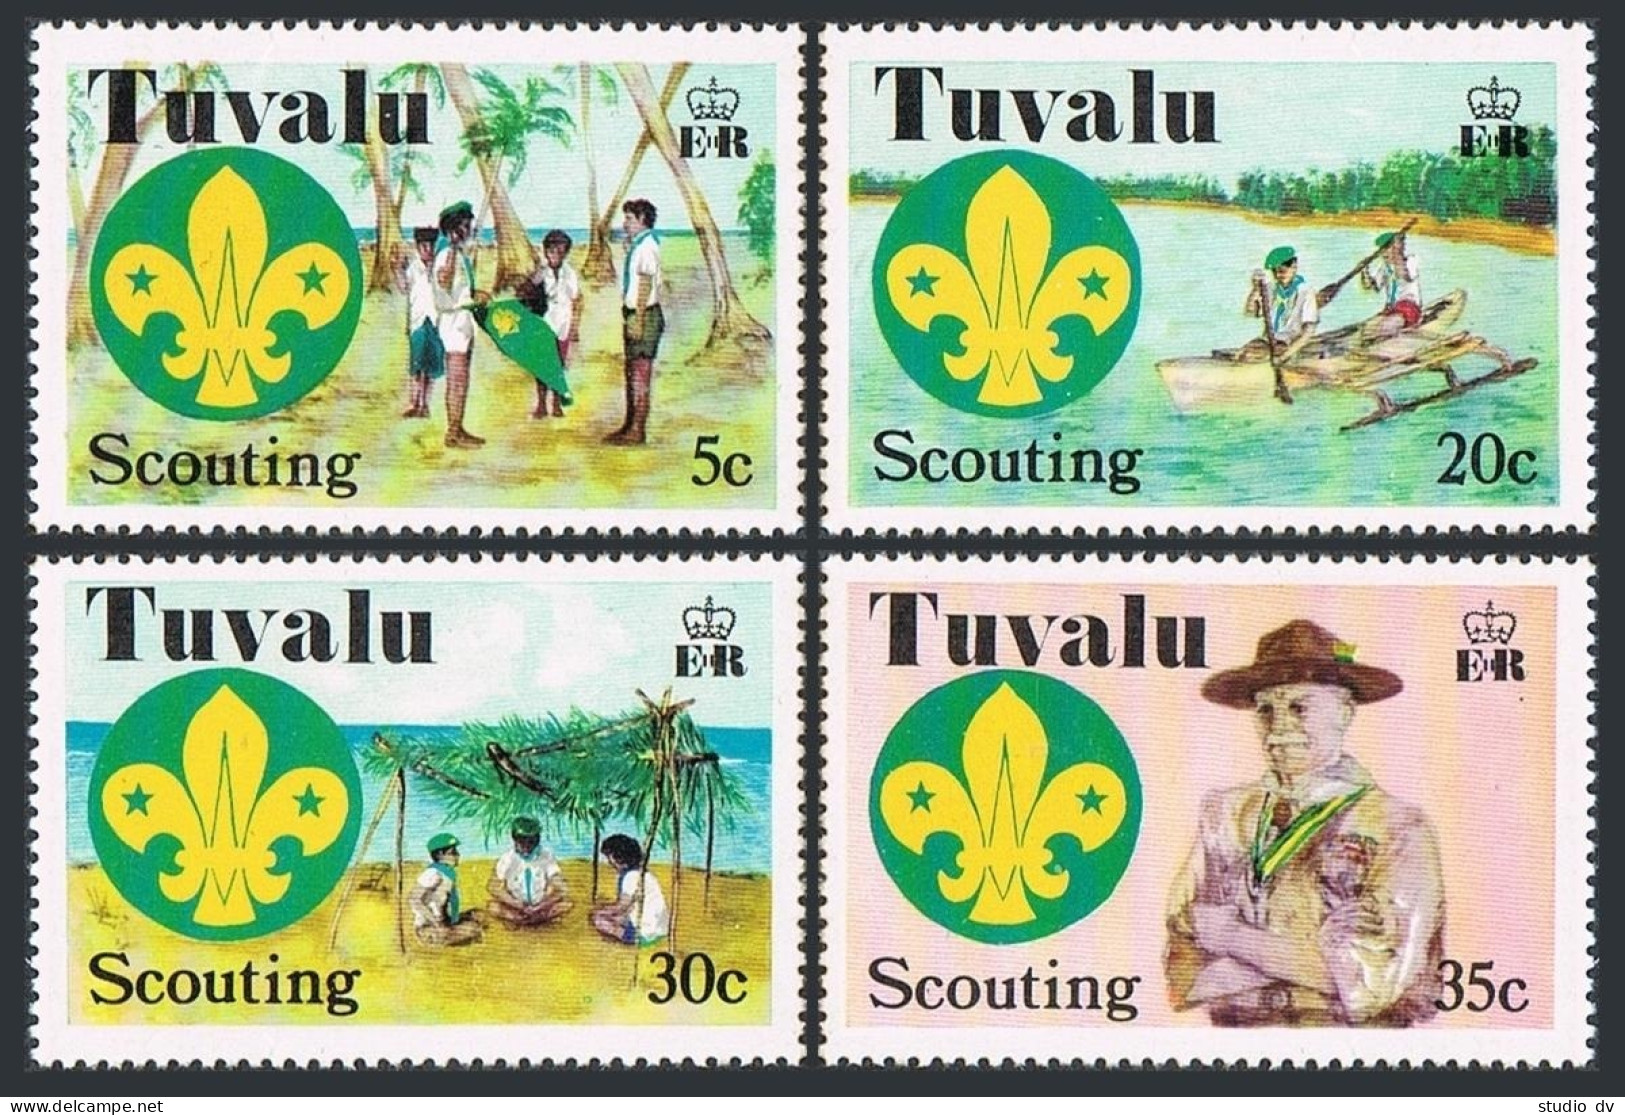 Tuvalu 50-53, MNH. Mi 50-53. Scouting In Tuvalu, 50, 1977. Canoe, Baden-Powell. - Tuvalu